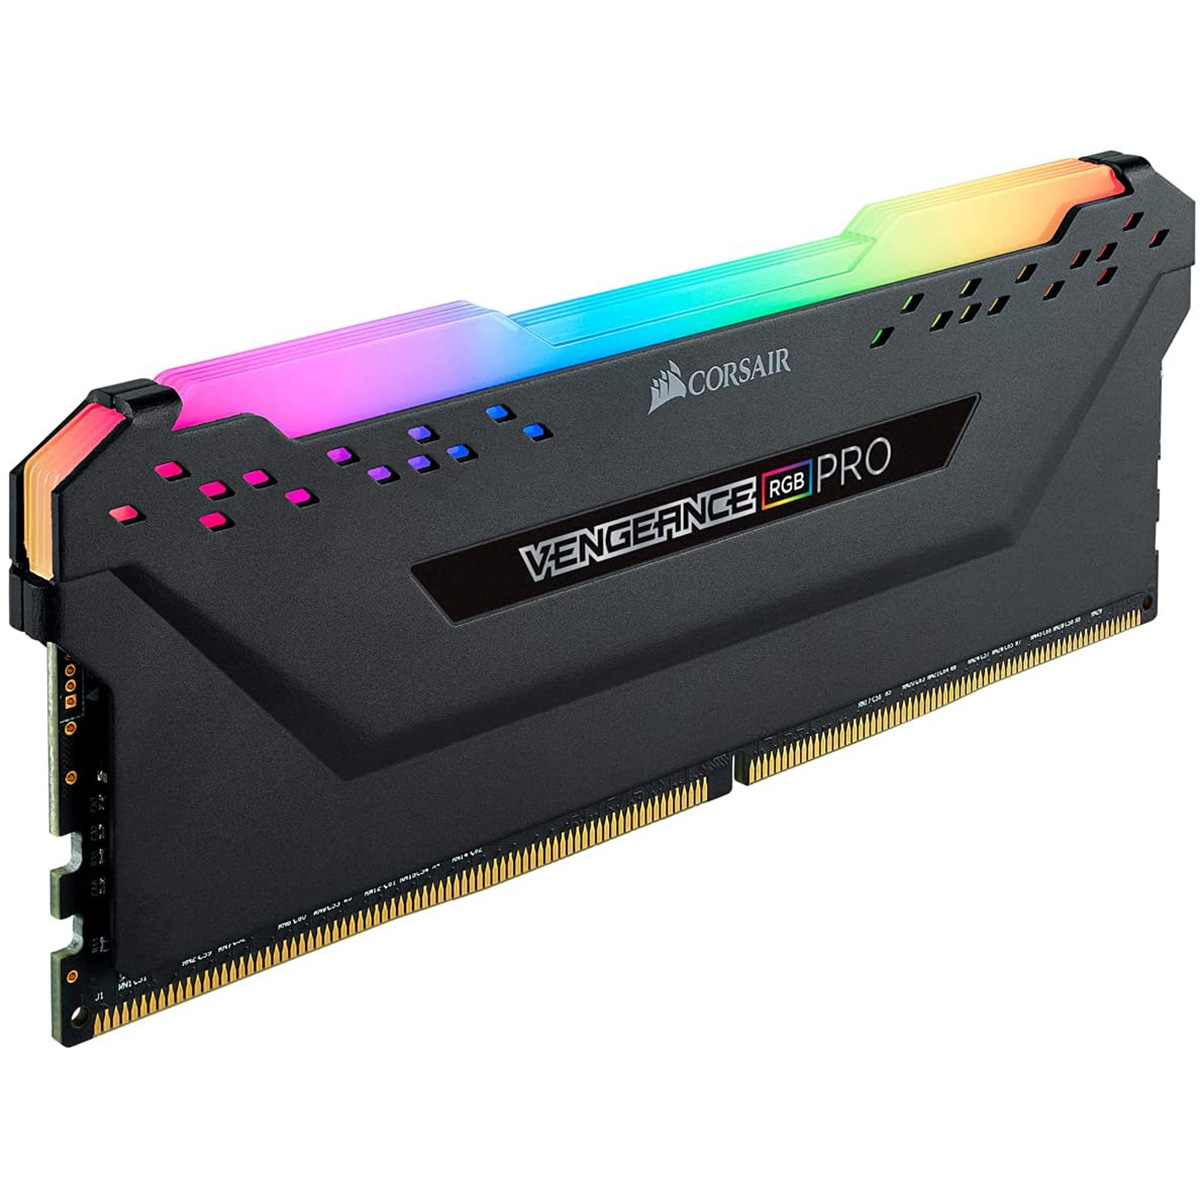 PCメモリー DDR4 3600MHz 16GB 1x16GB DIMM Unbuffered 18-22-22-42 VENGEANCE RGB PRO 1.35V. for AMD